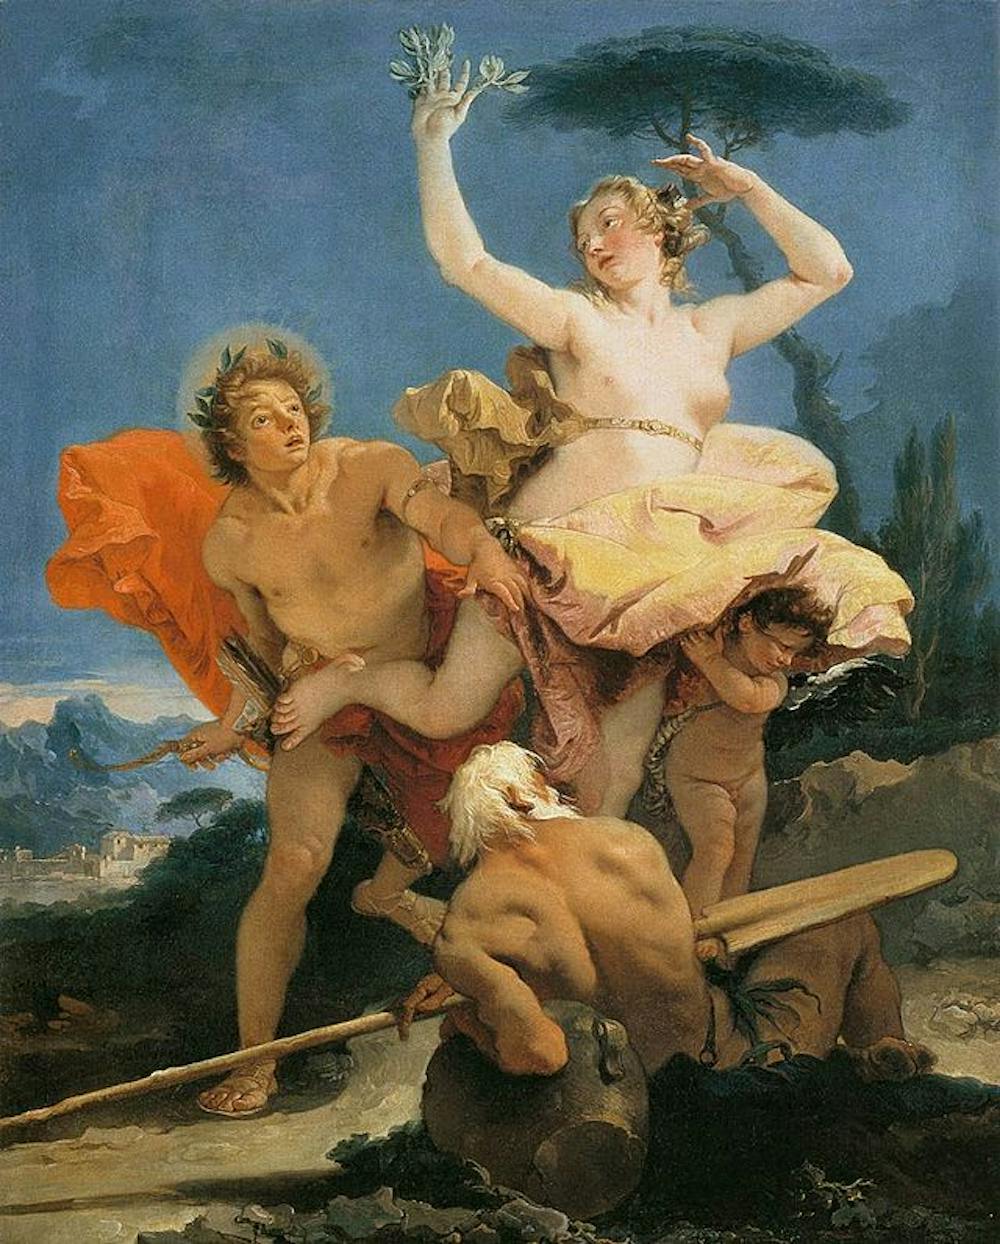 daphne and apollo greek mythology